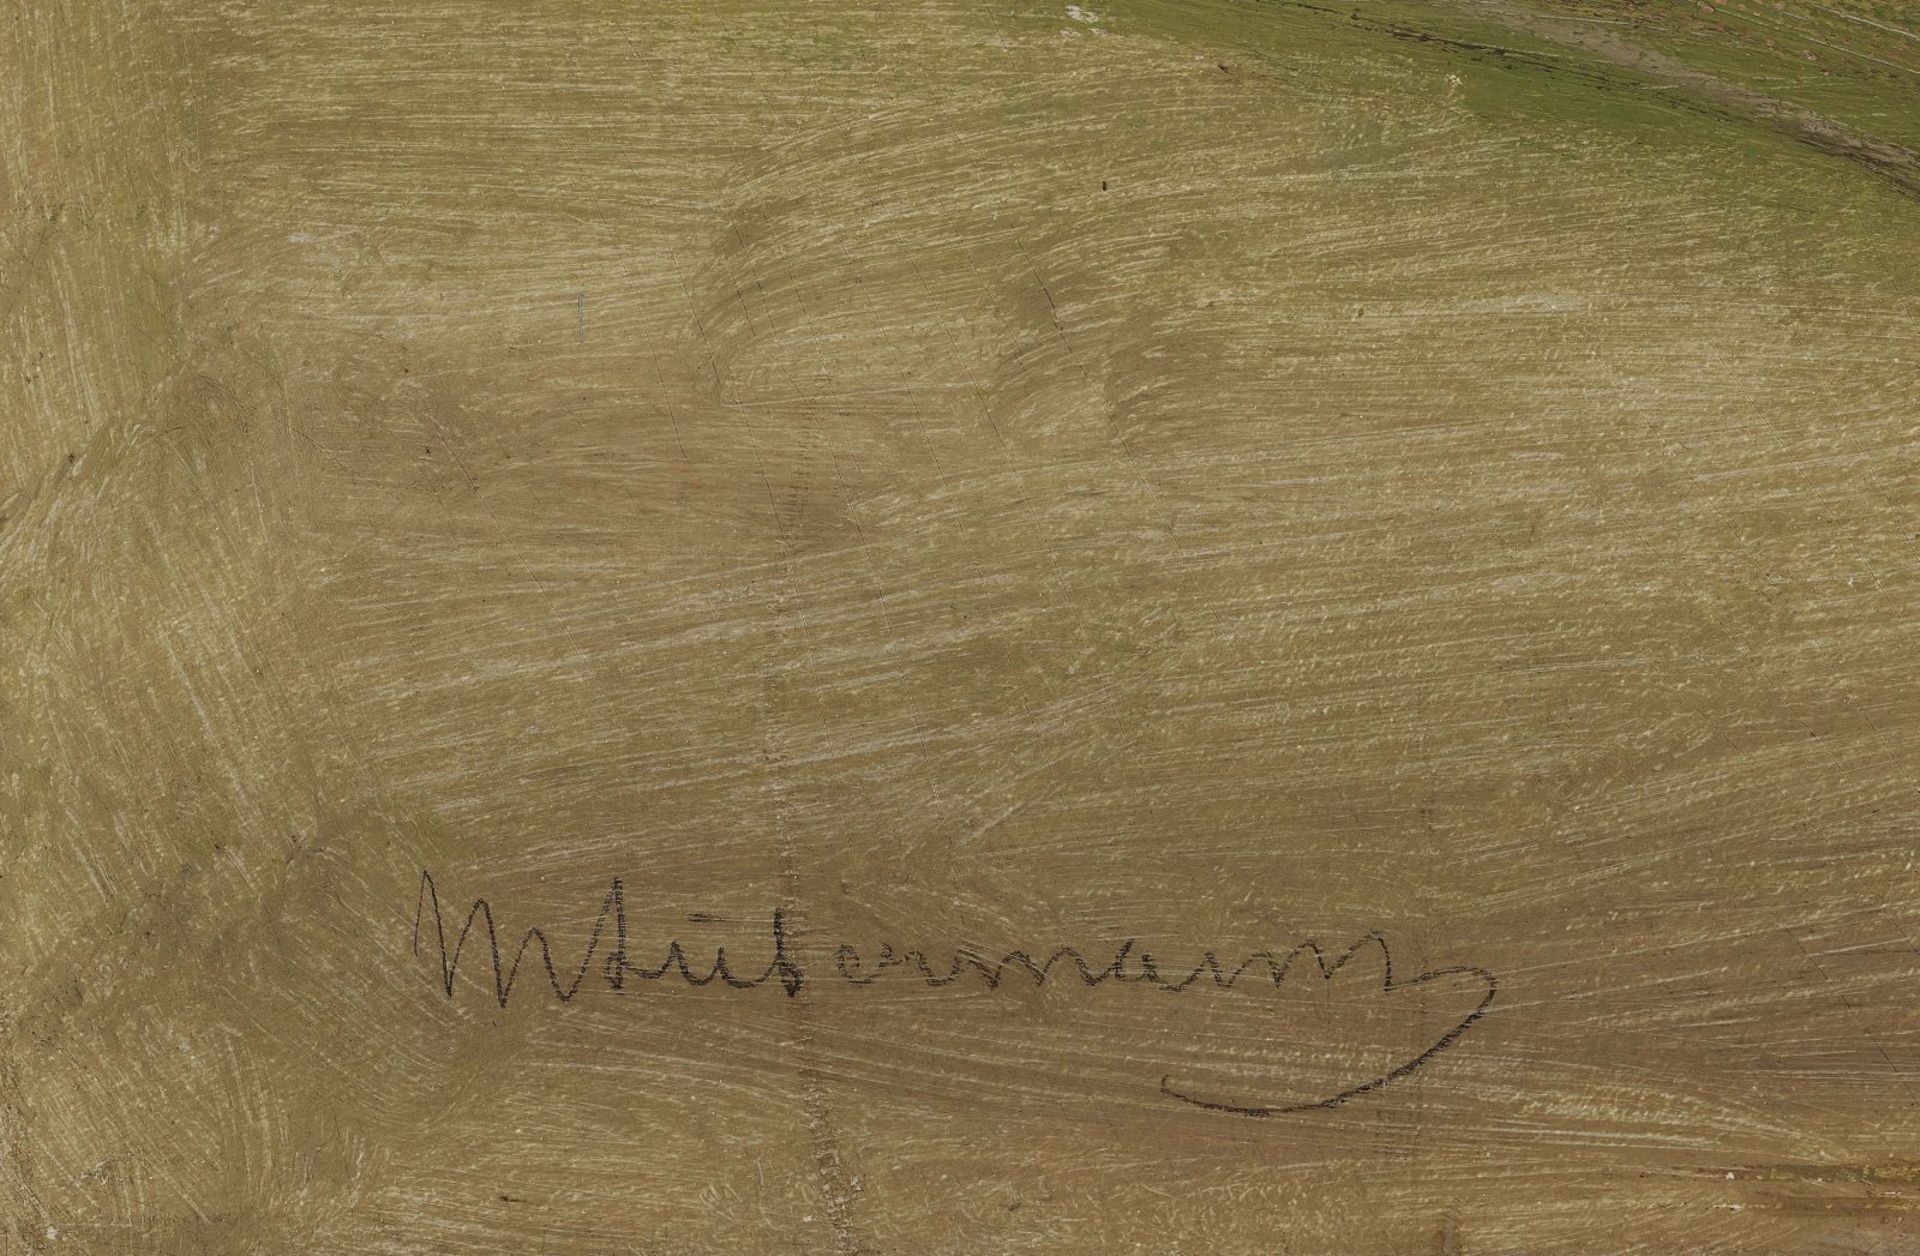 Max Liebermann - Bild 3 aus 5